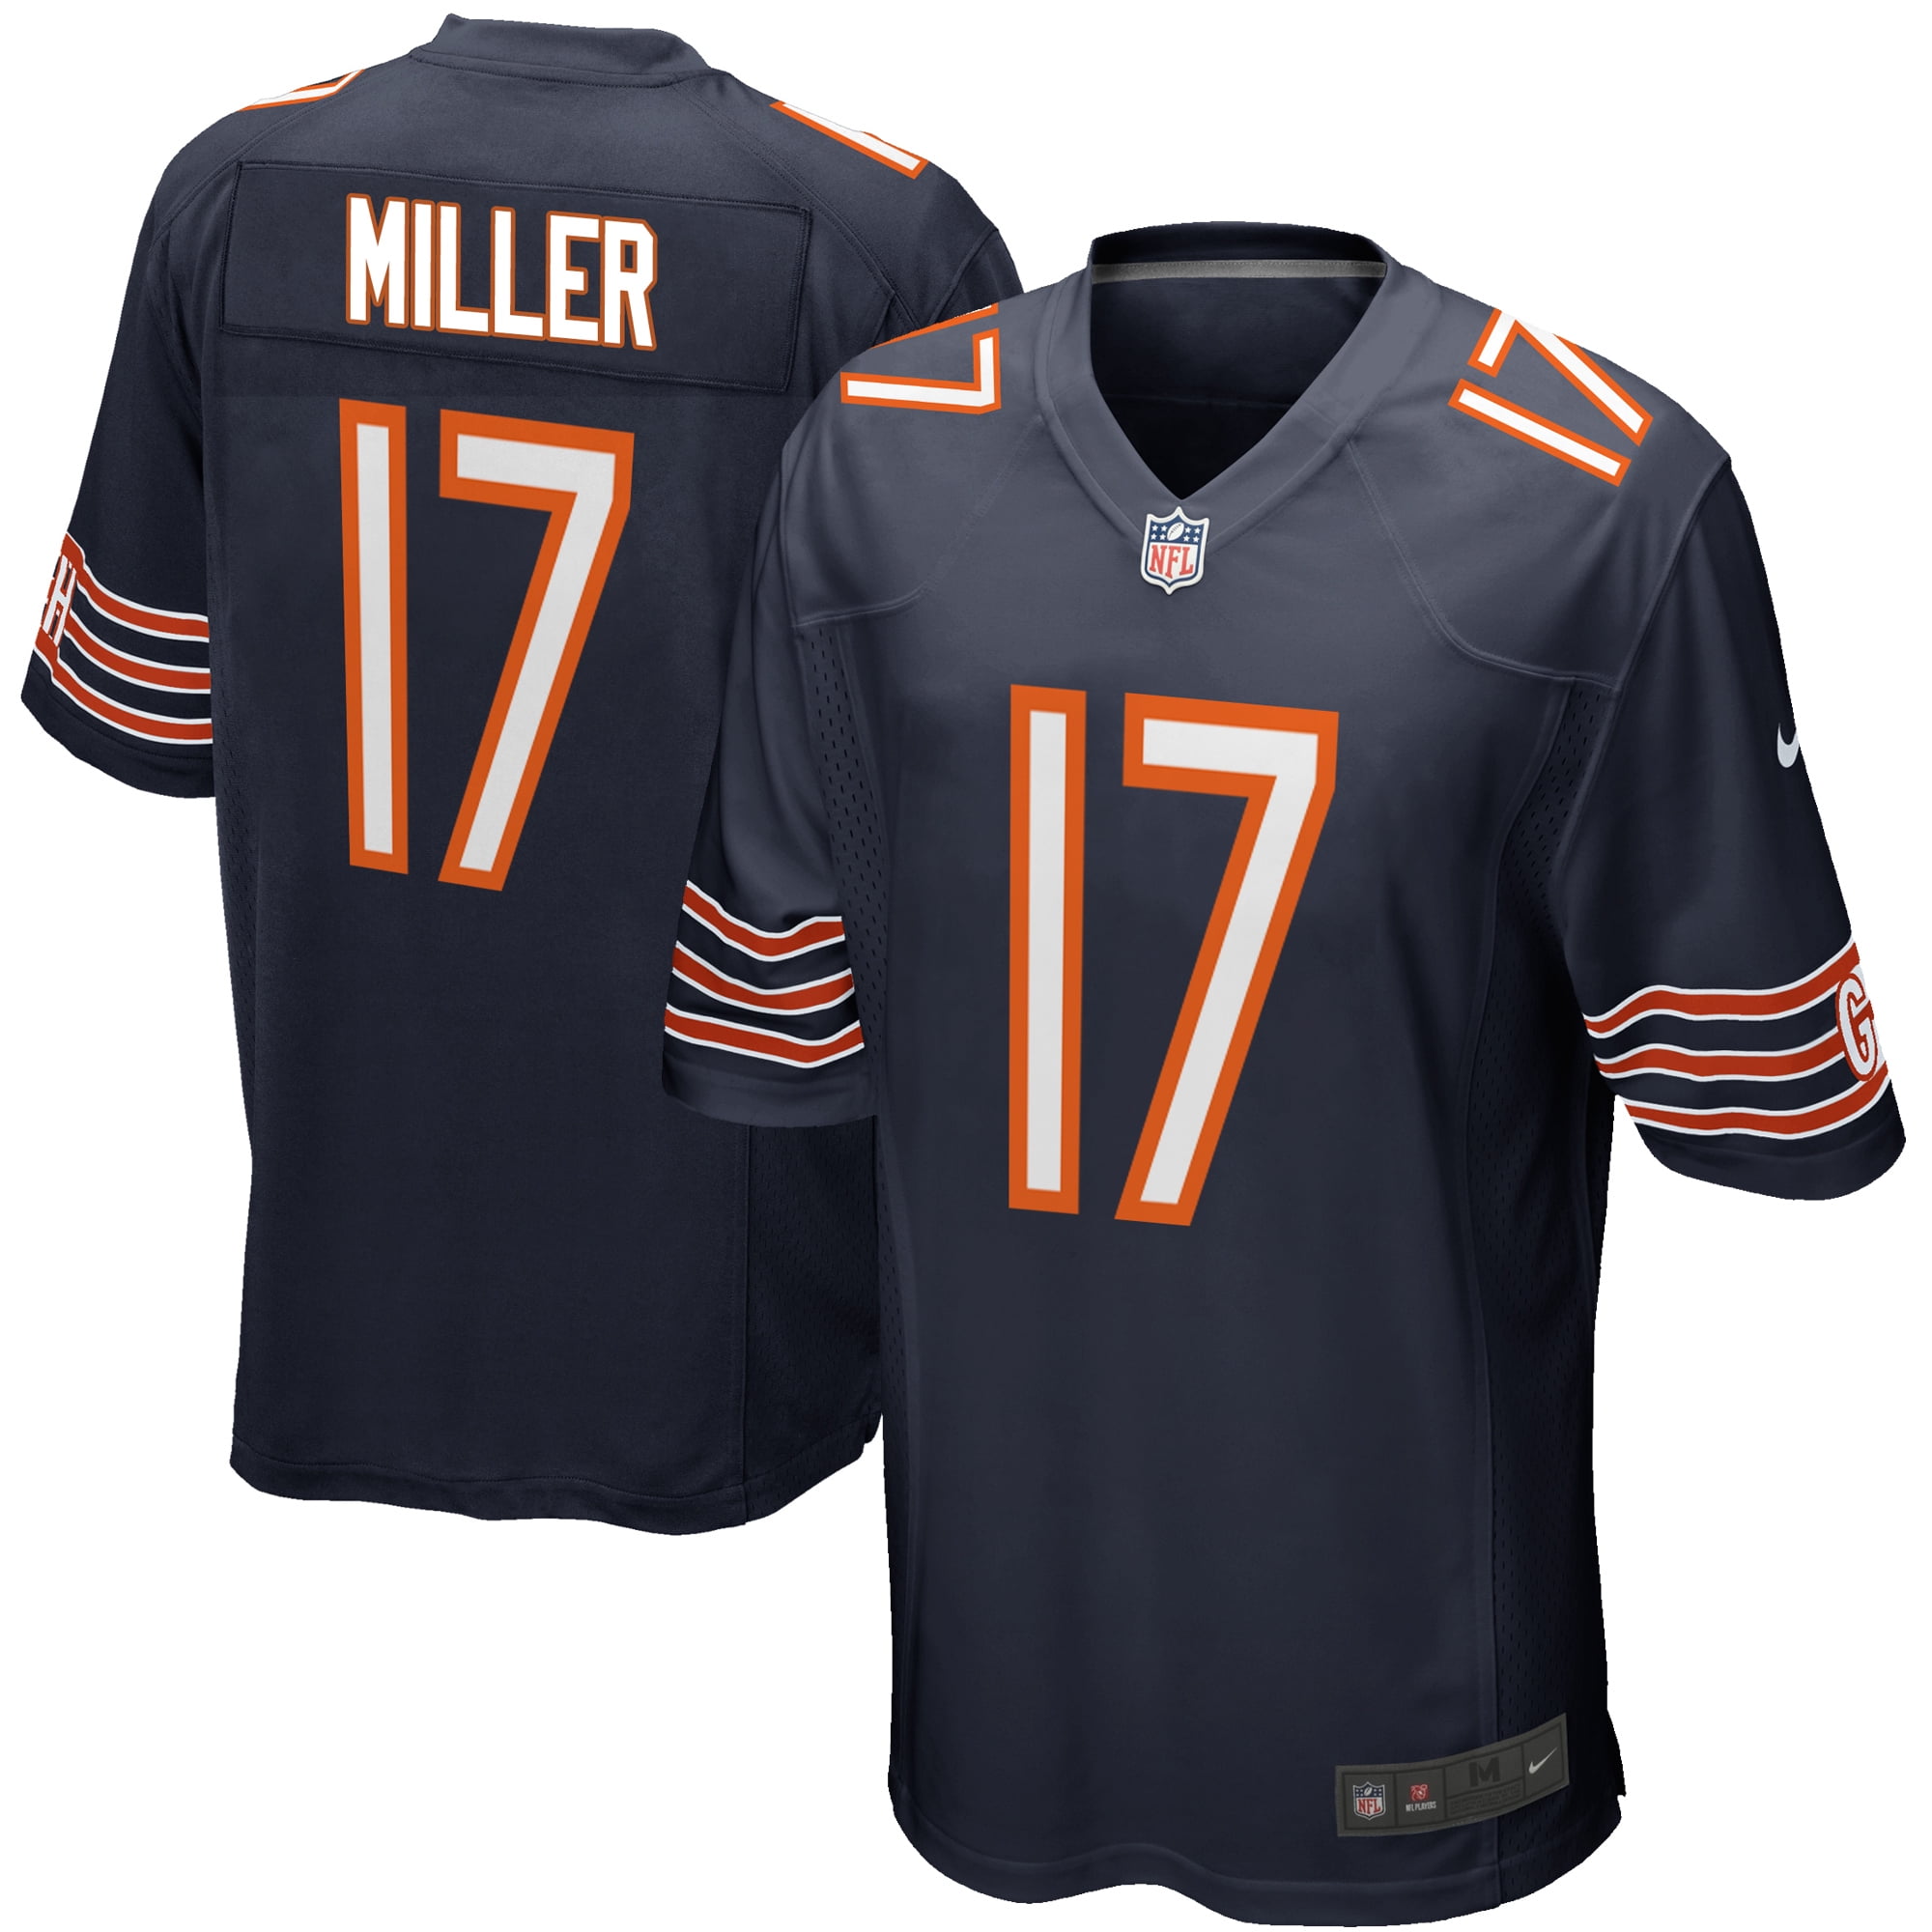 miller bears jersey